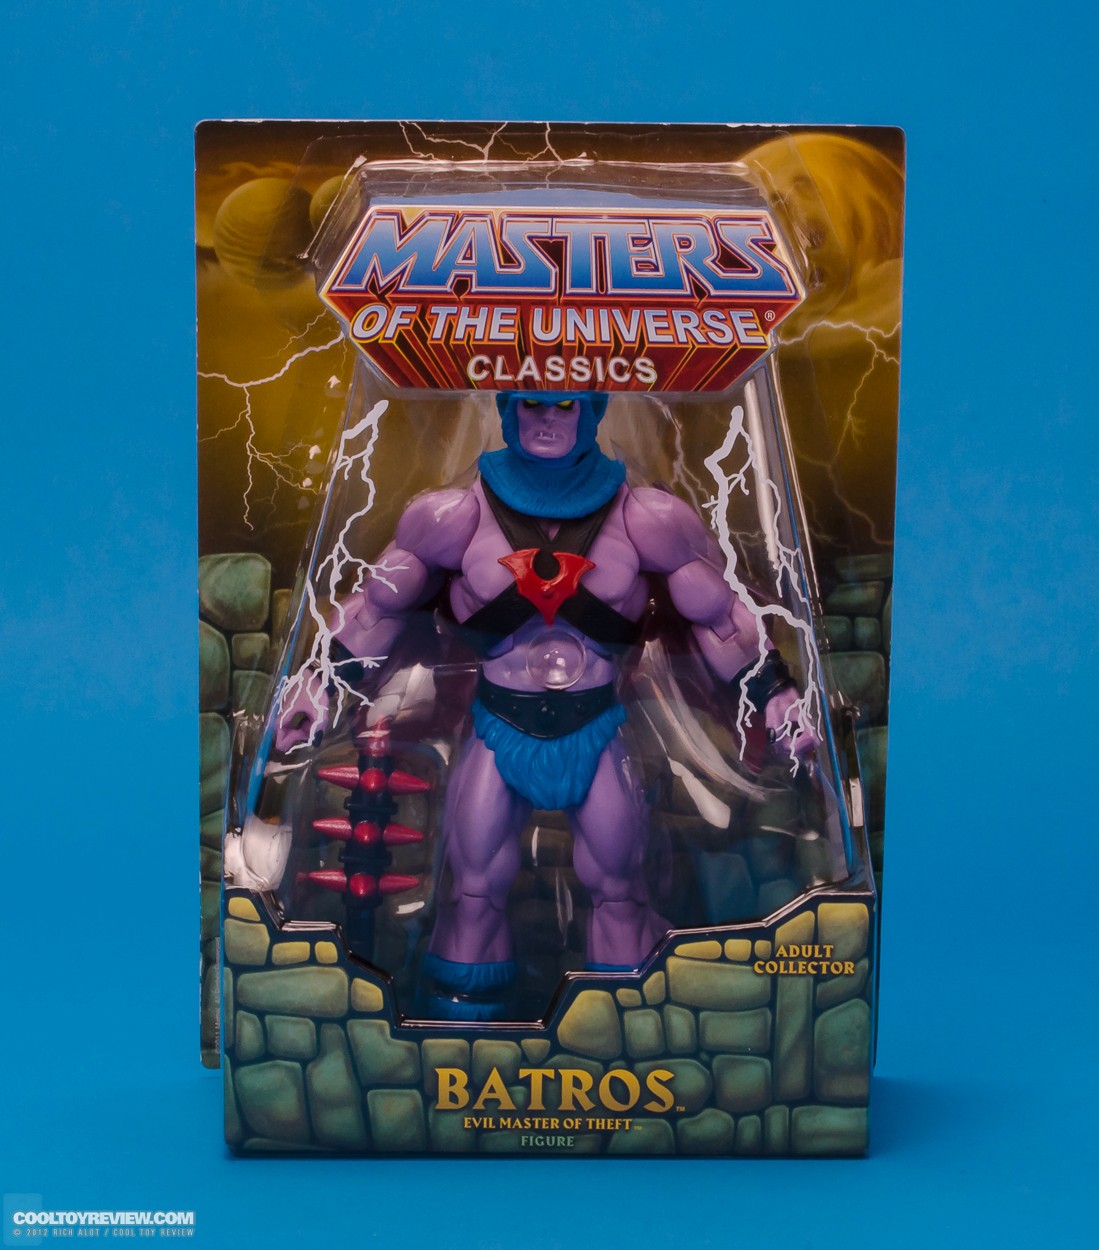 Mattel-MOTUC-Batros-22.JPG